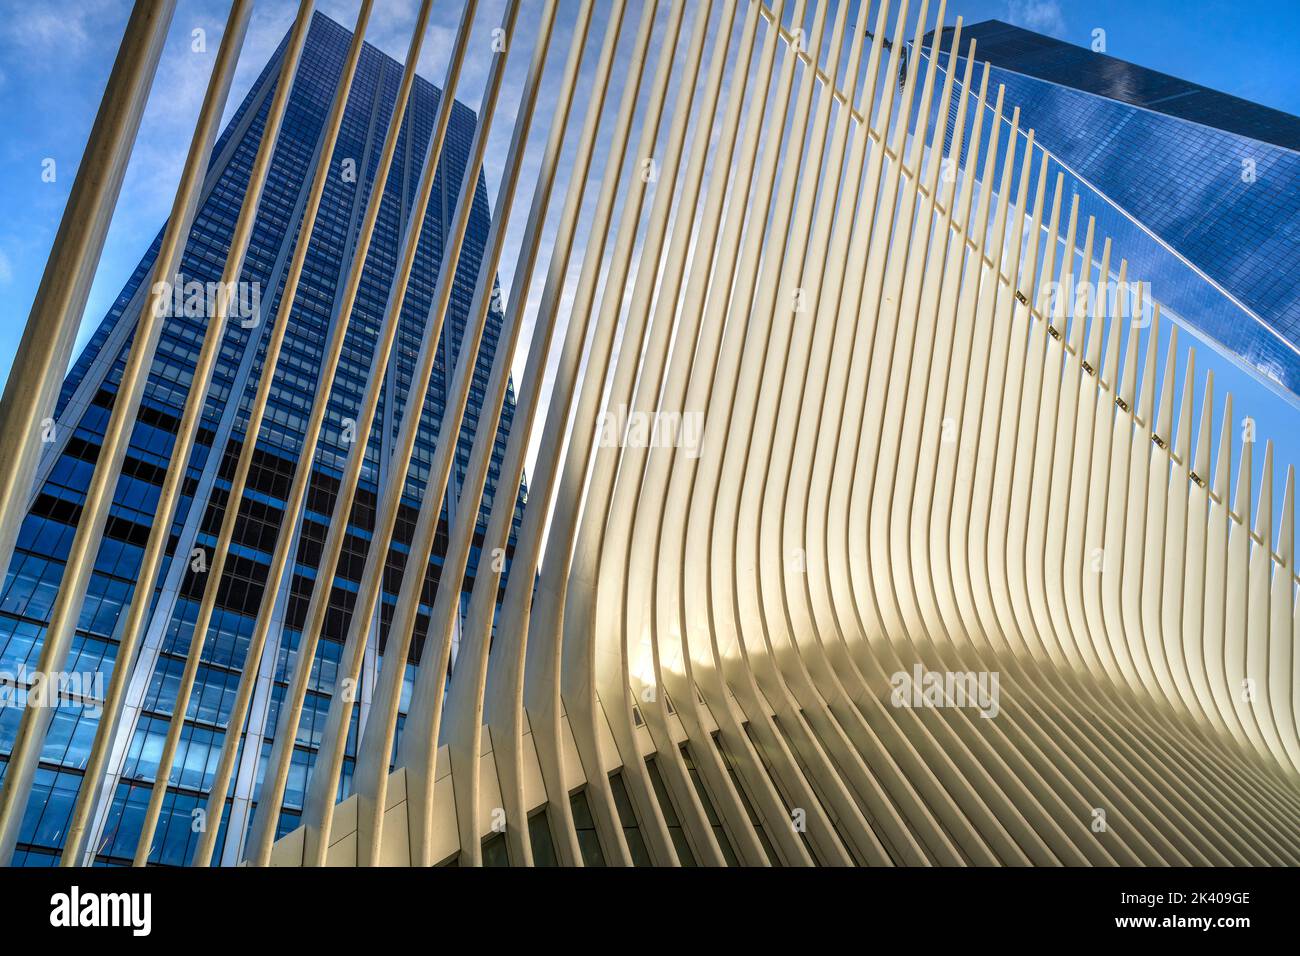 Stazione World Trade Center (PATH), conosciuta anche come Oculus, progettata dall'architetto Santiago Calatrava, Manhattan, New York, USA Foto Stock